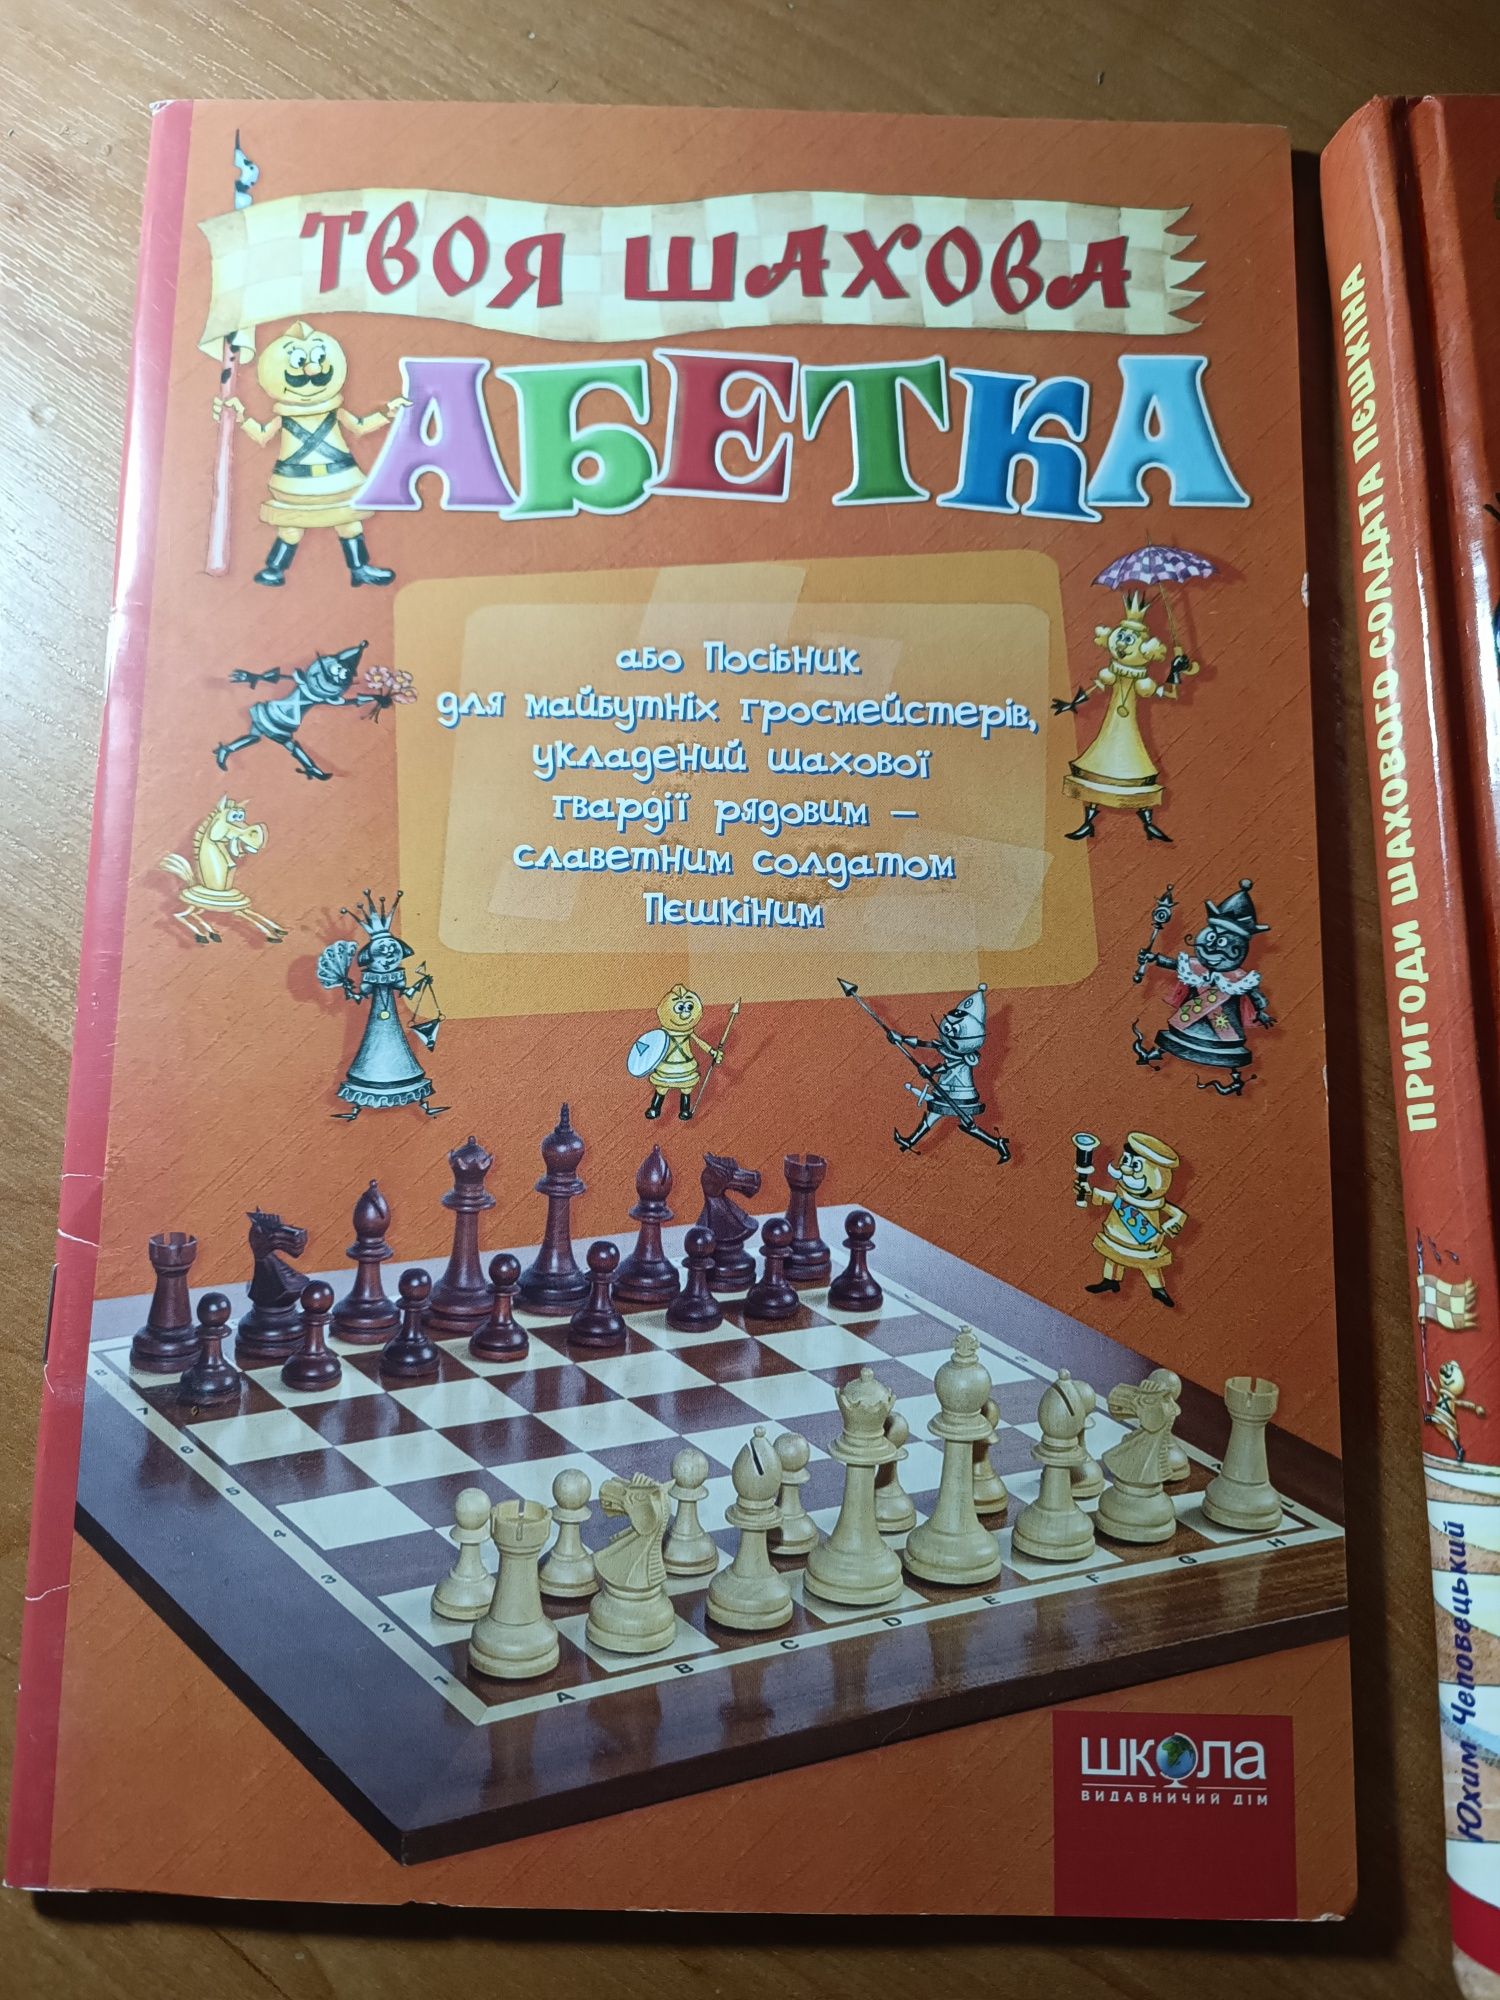 Пригоди шахового солдата Пєшкіна